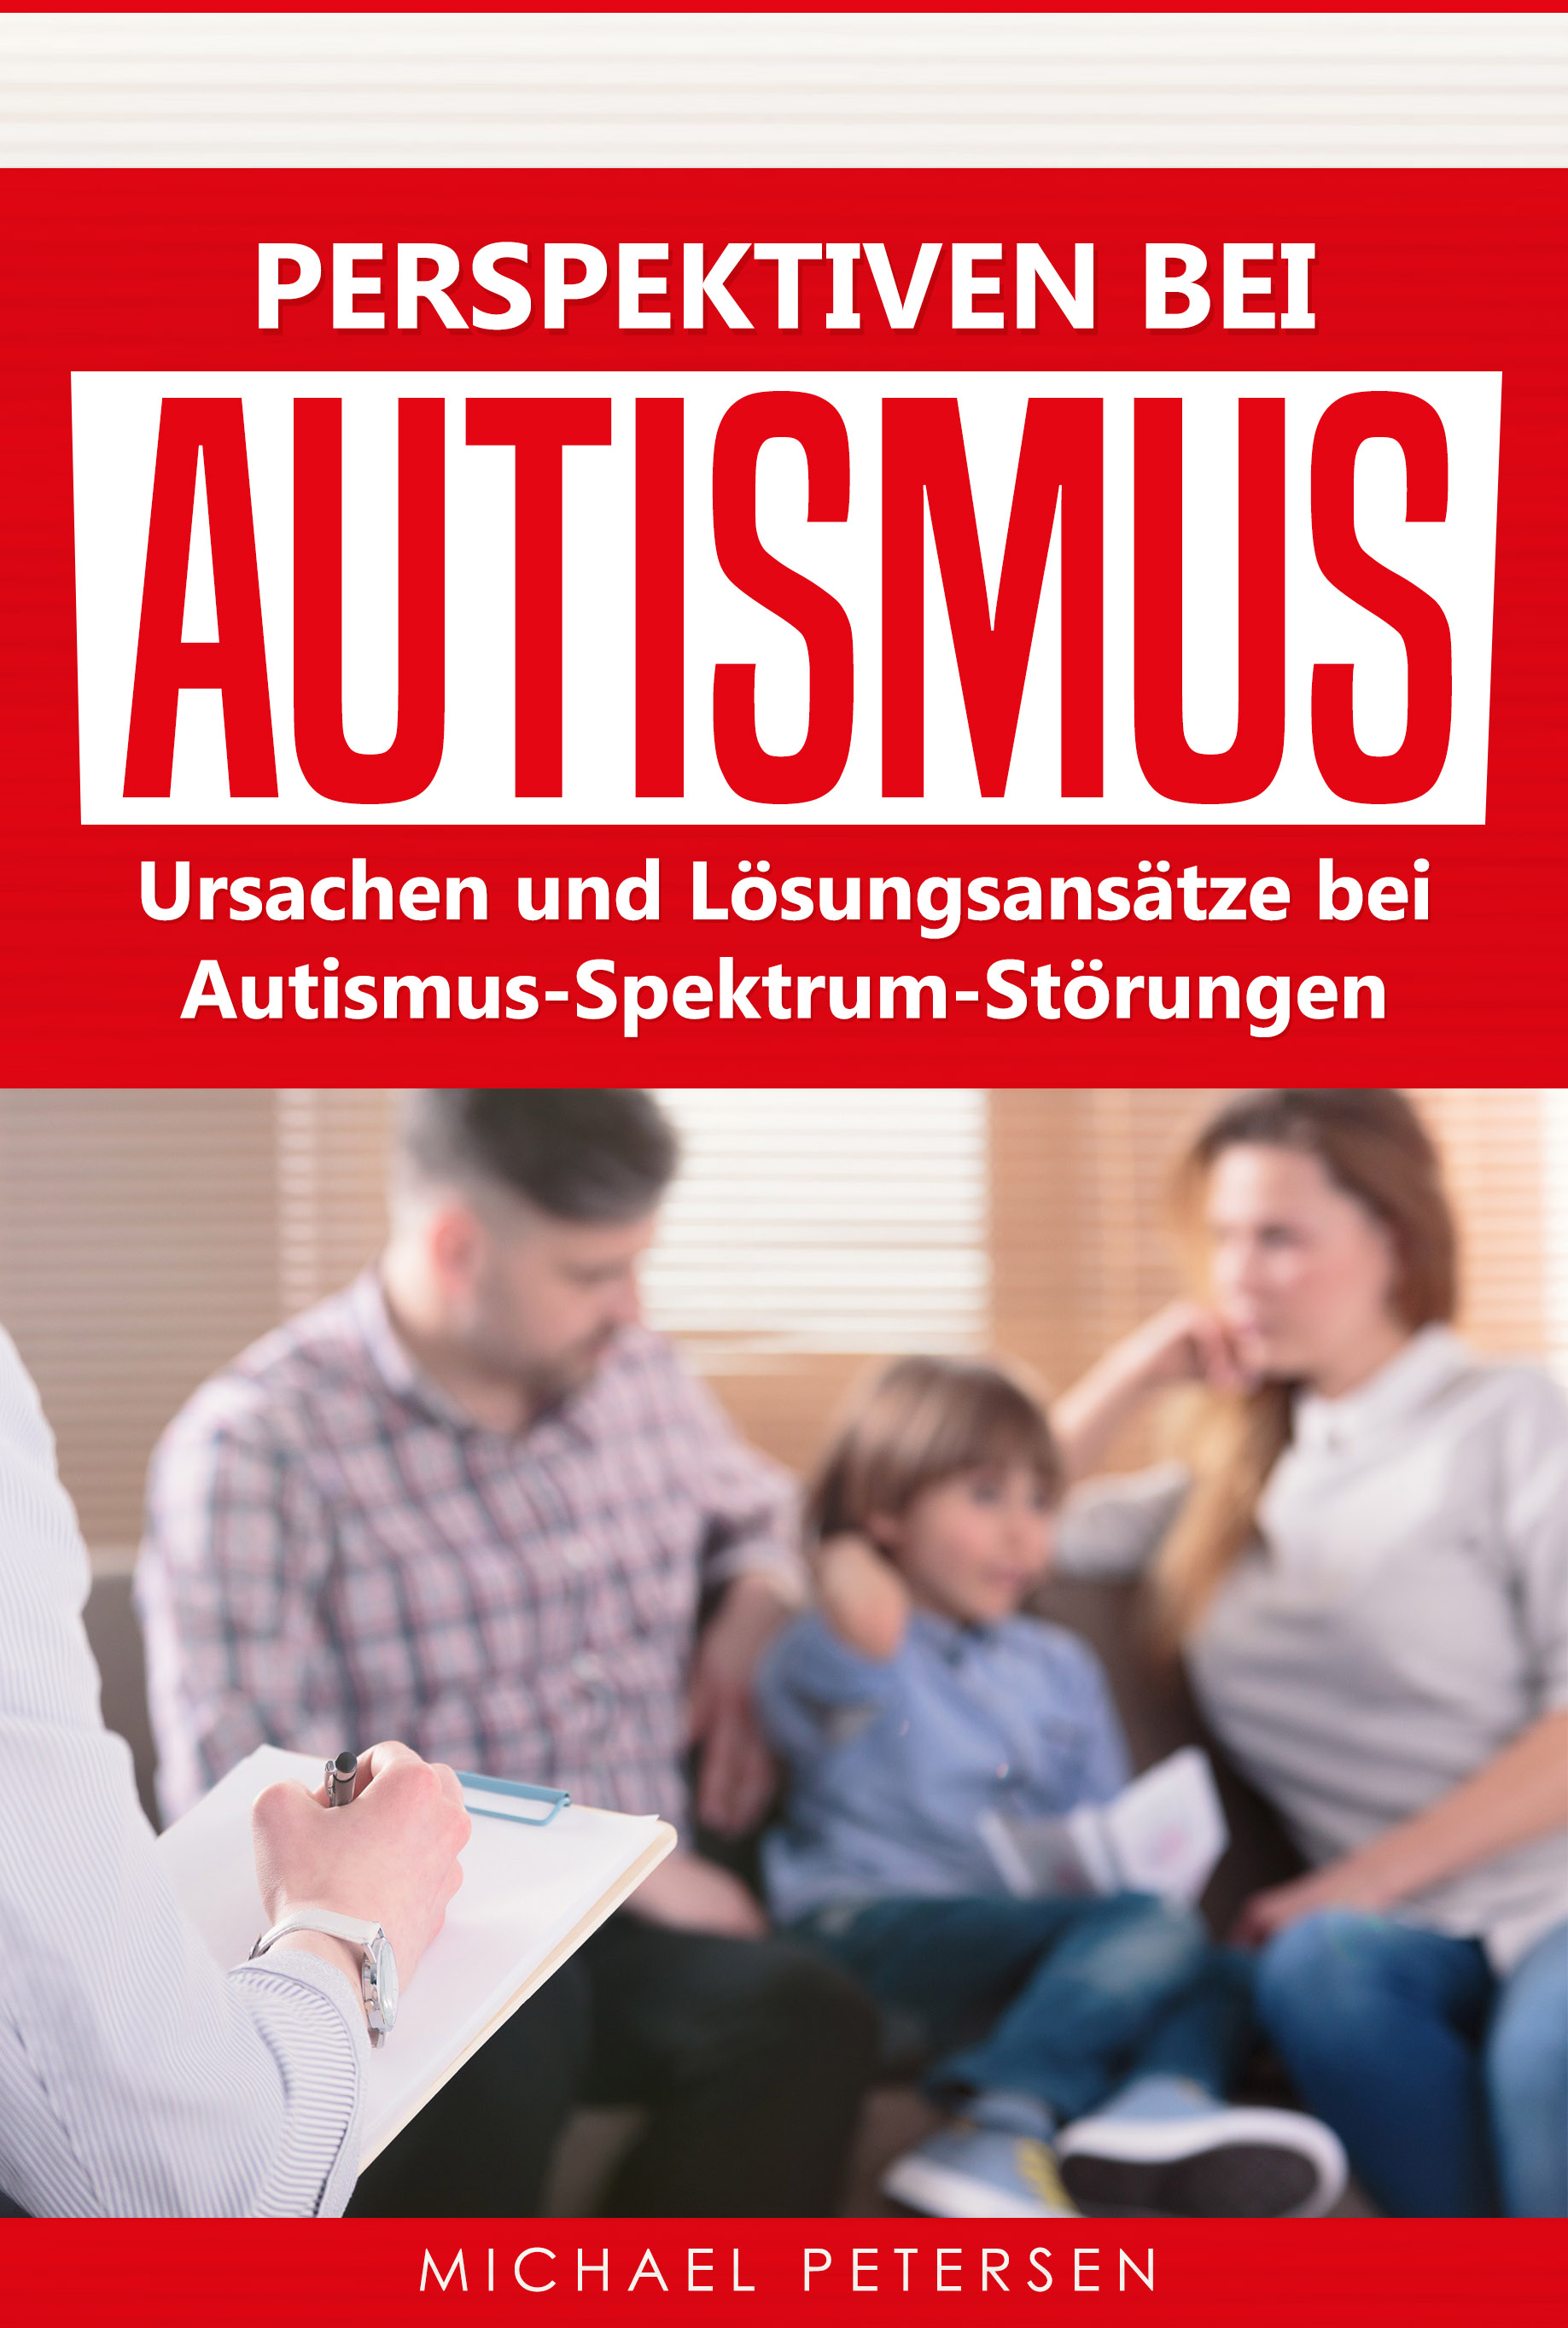 Autismus_Buch